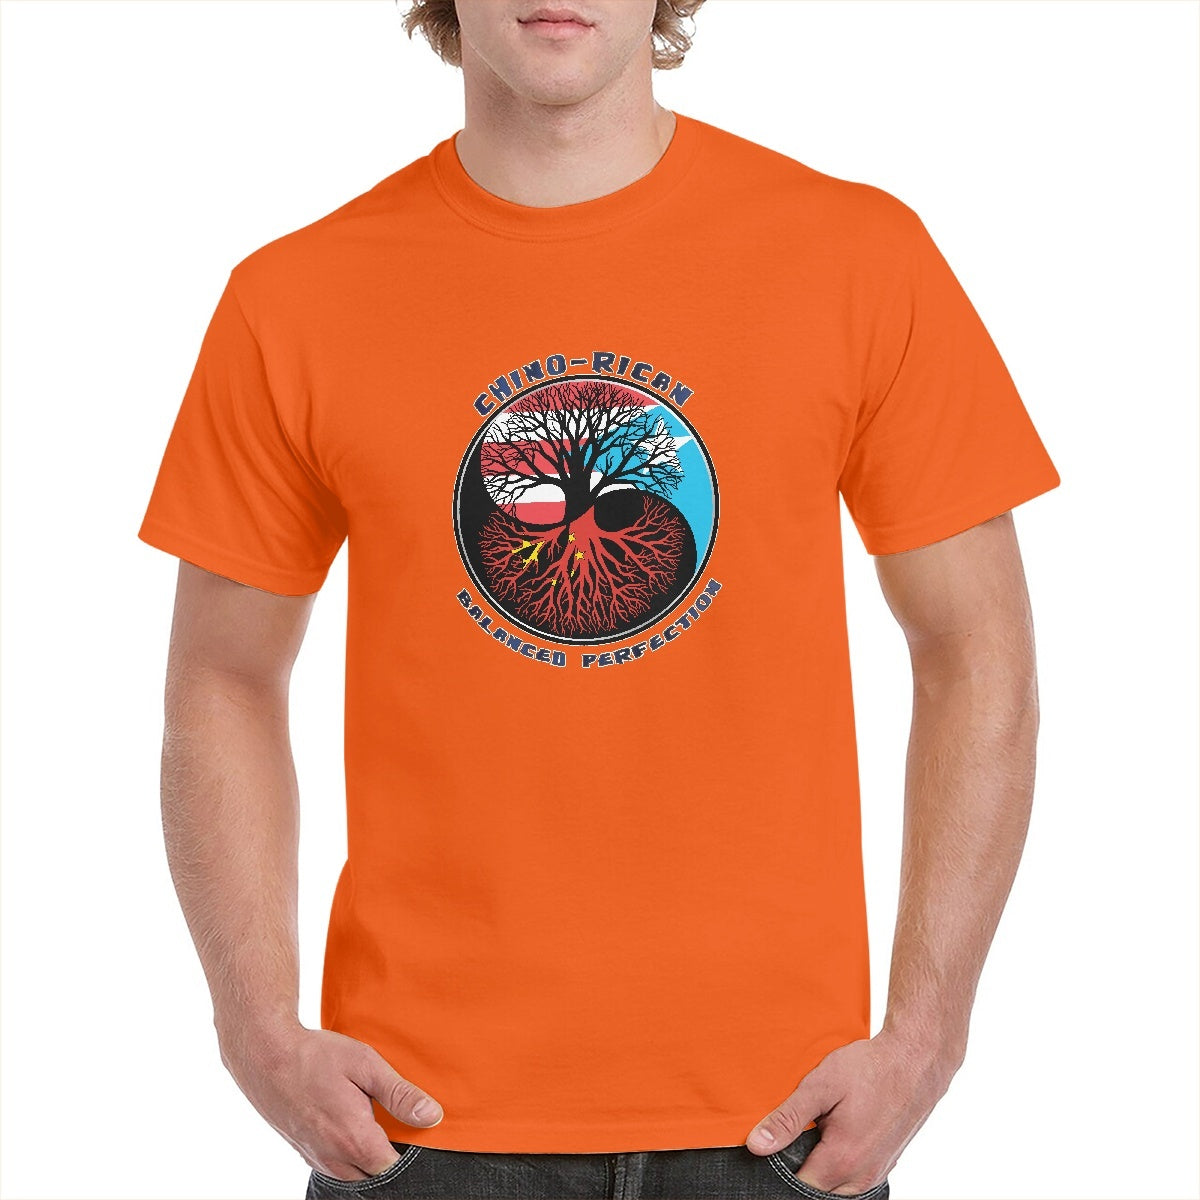 Chino-Rican Balanced Perfection T-Shirt (Small-5XL)